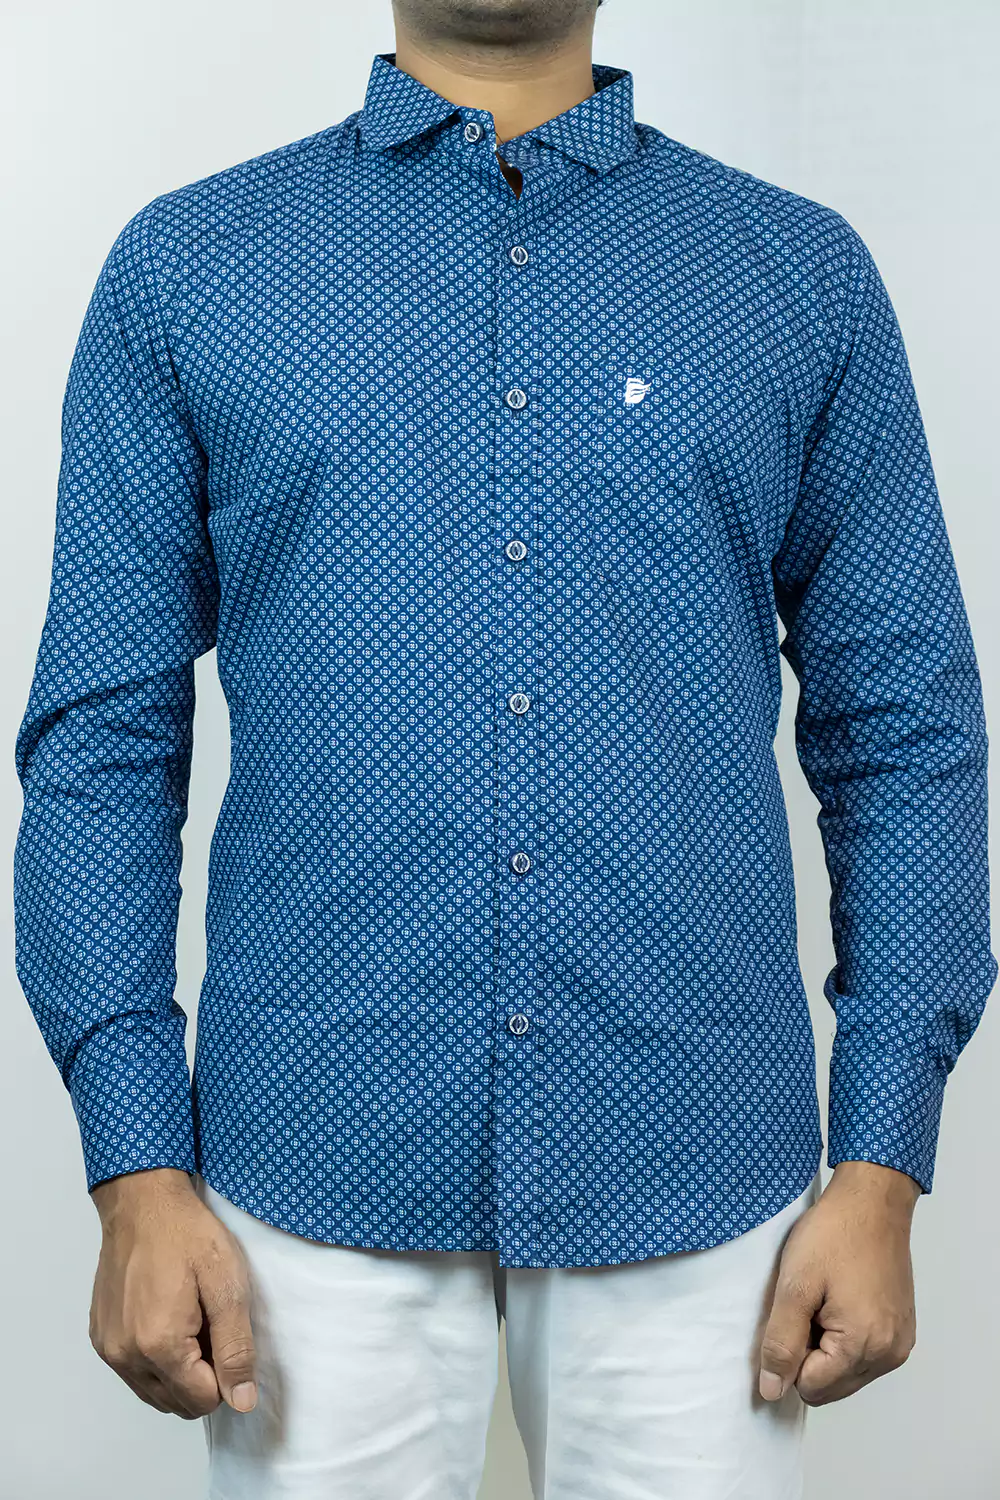 Indigo Blue Printed Shirt